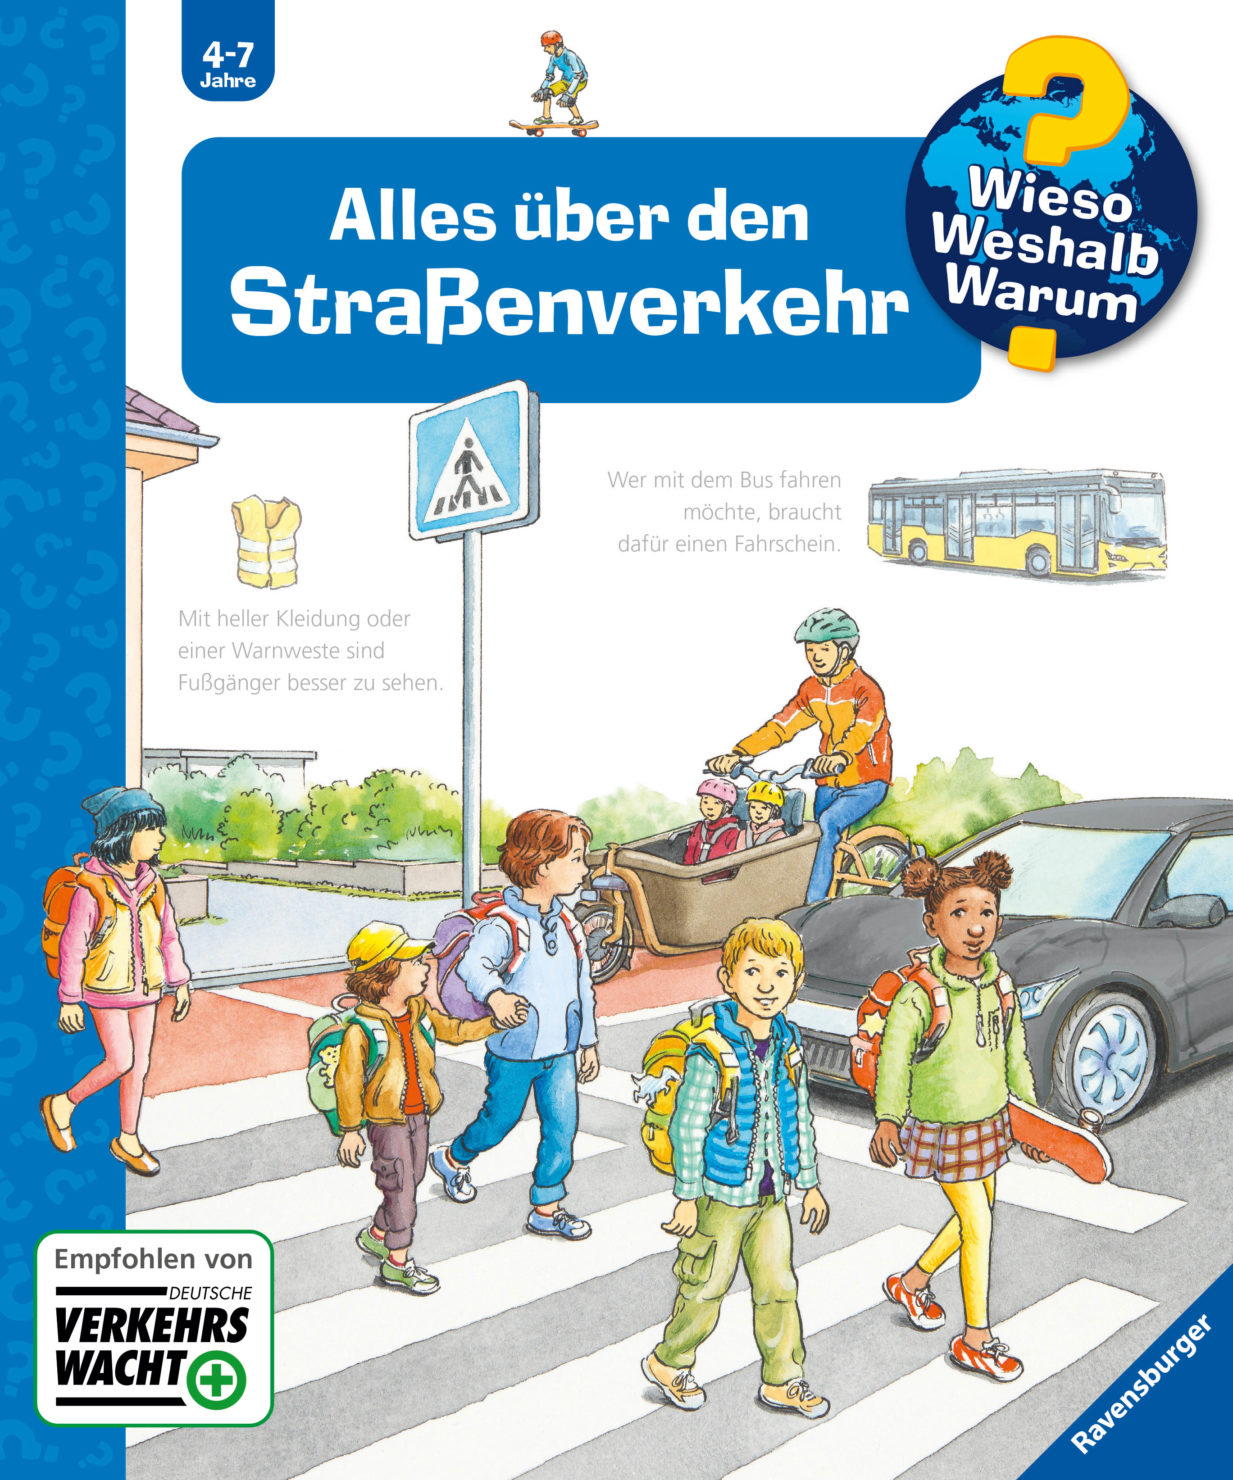 Verkehrsregeln spielerisch lernen: DVW und Ravensburger für mehr Sicherheit von Kindern im Straßenverkehr